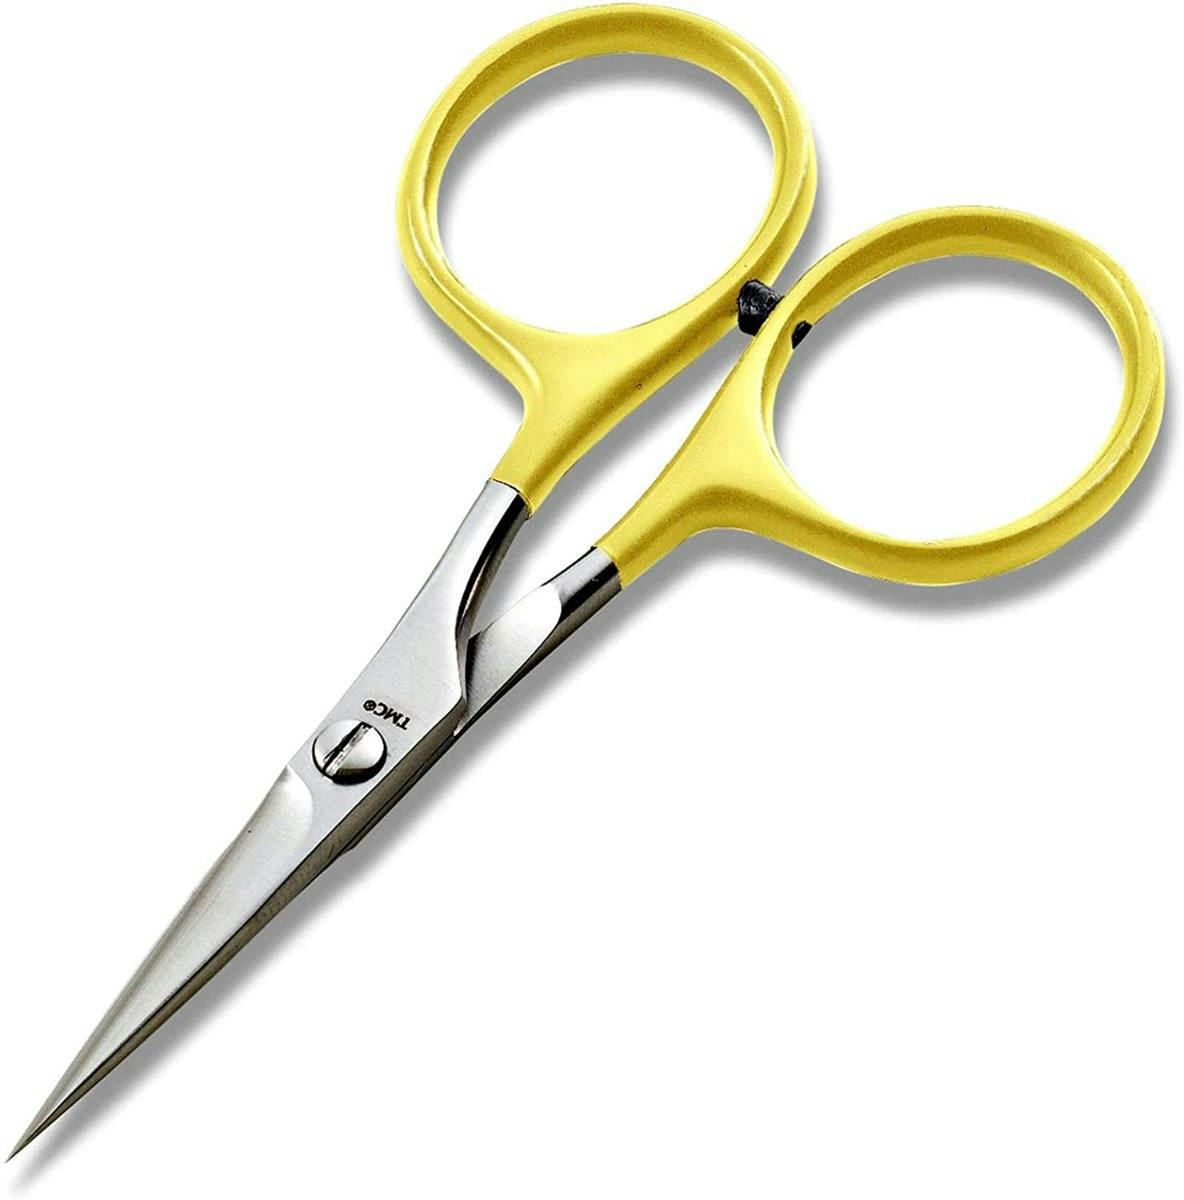 Tiemco Razor Scissors - Serrated with Comfortable Larger Loop Grip